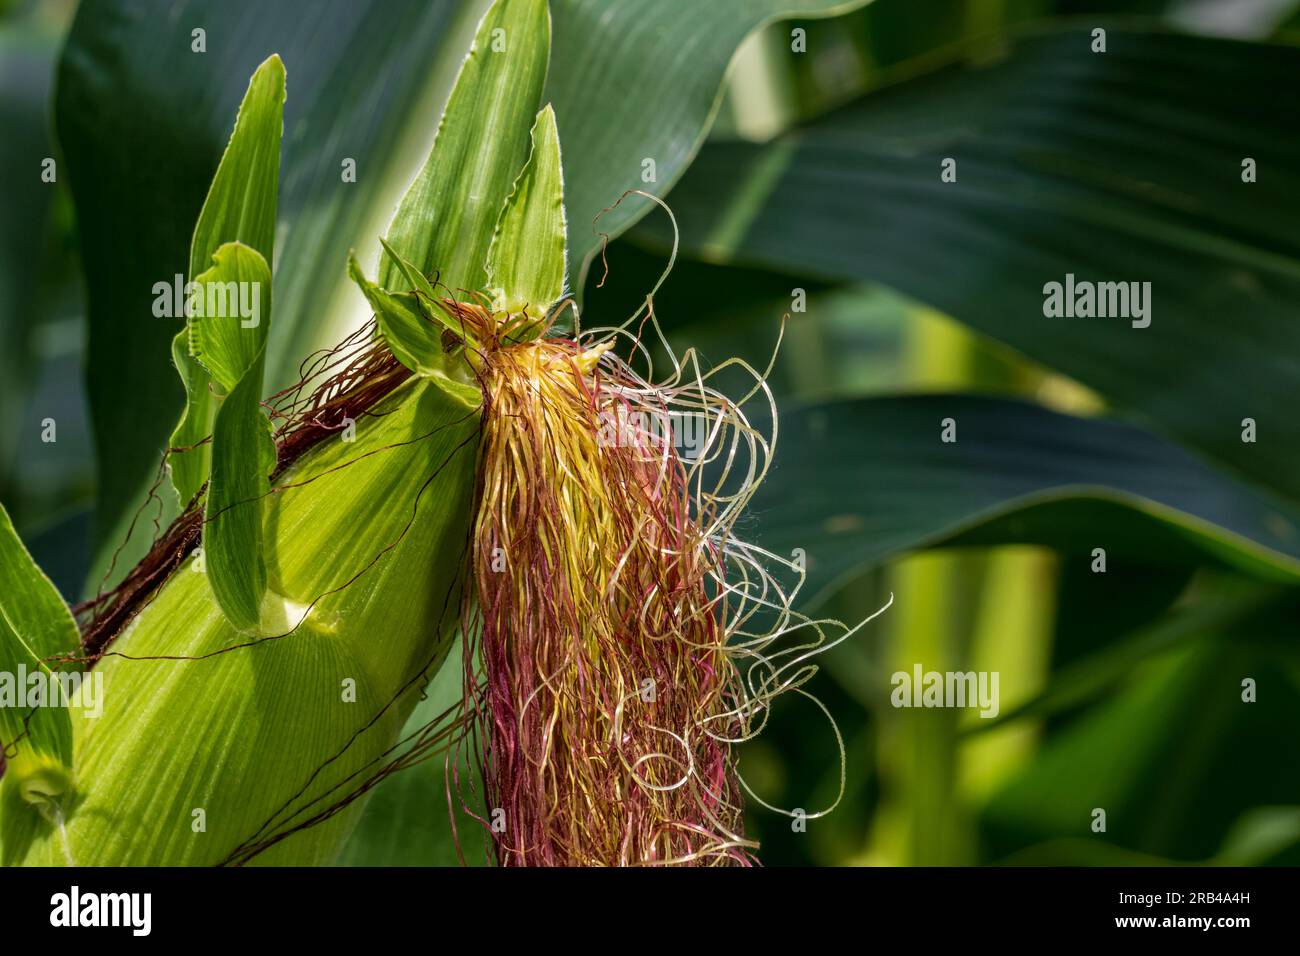 Champ de maïs avec épis de maïs et soie poussant sur la tige de maïs.Éthanol, agriculture et agriculture concept Banque D'Images